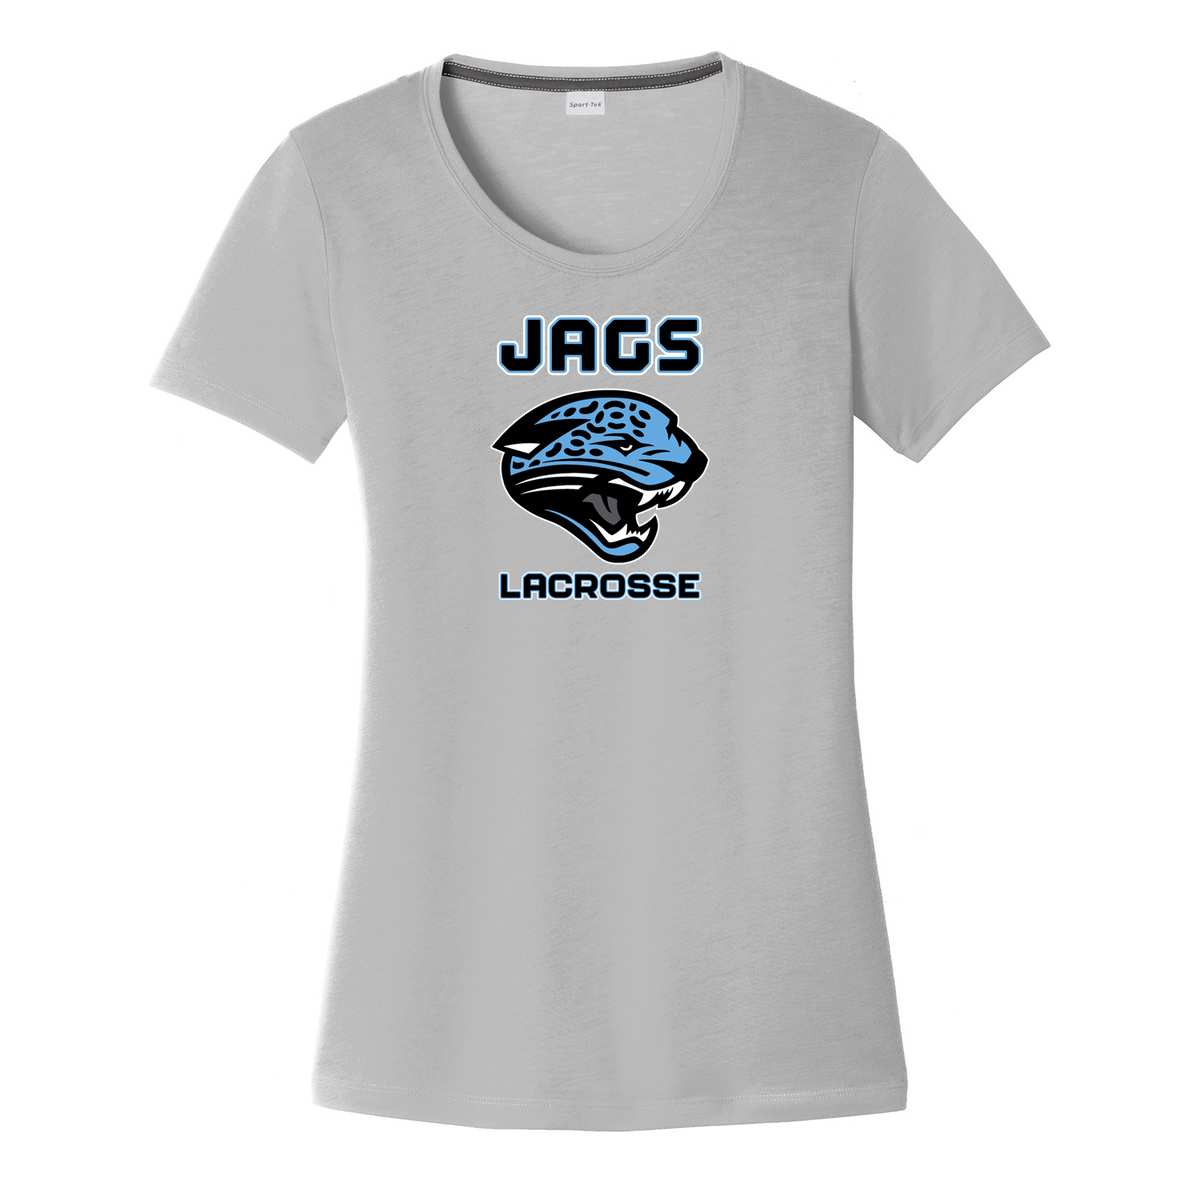 Jags Lacrosse Women's CottonTouch Performance T-Shirt